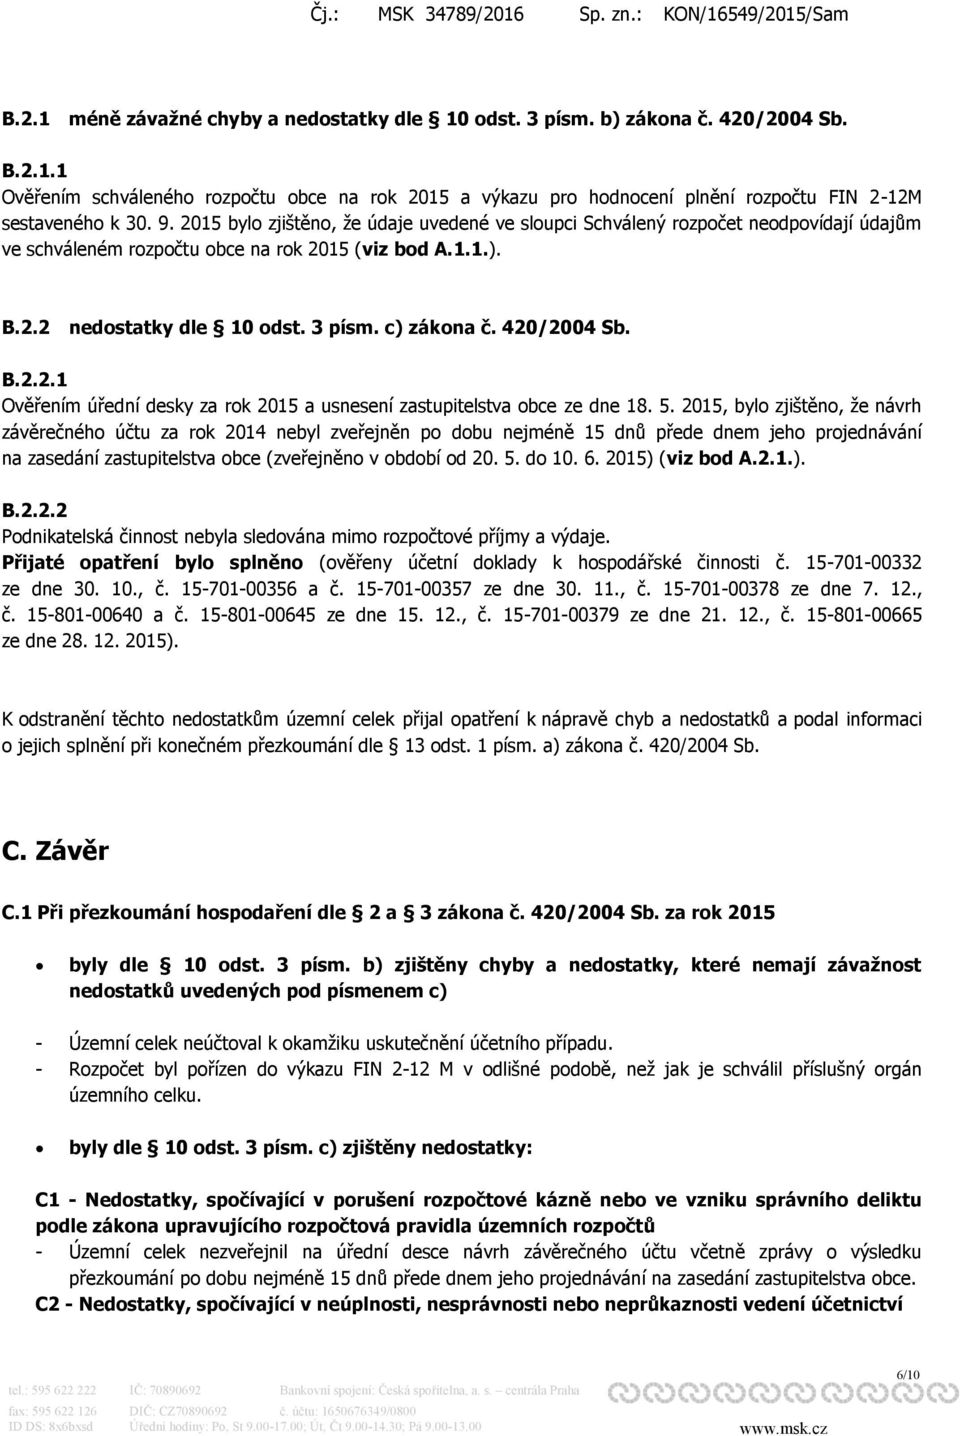 420/2004 Sb. B.2.2.1 Ověřením úřední desky za rok 2015 a usnesení zastupitelstva obce ze dne 18. 5.